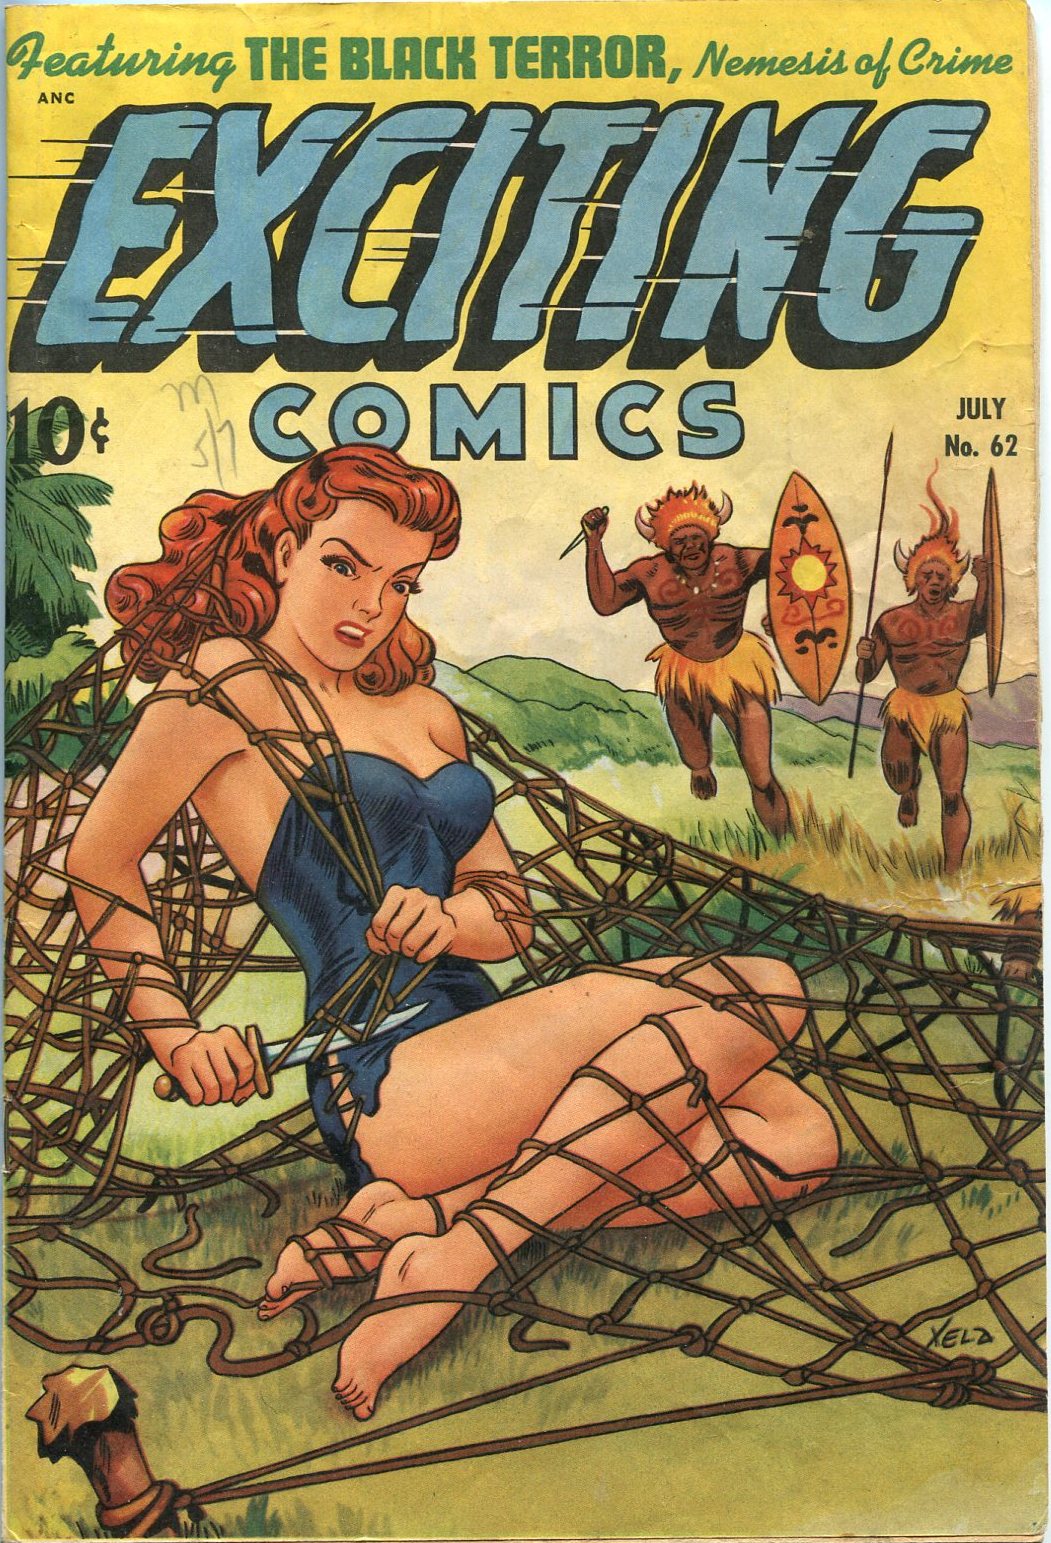 Erotic pulp comics